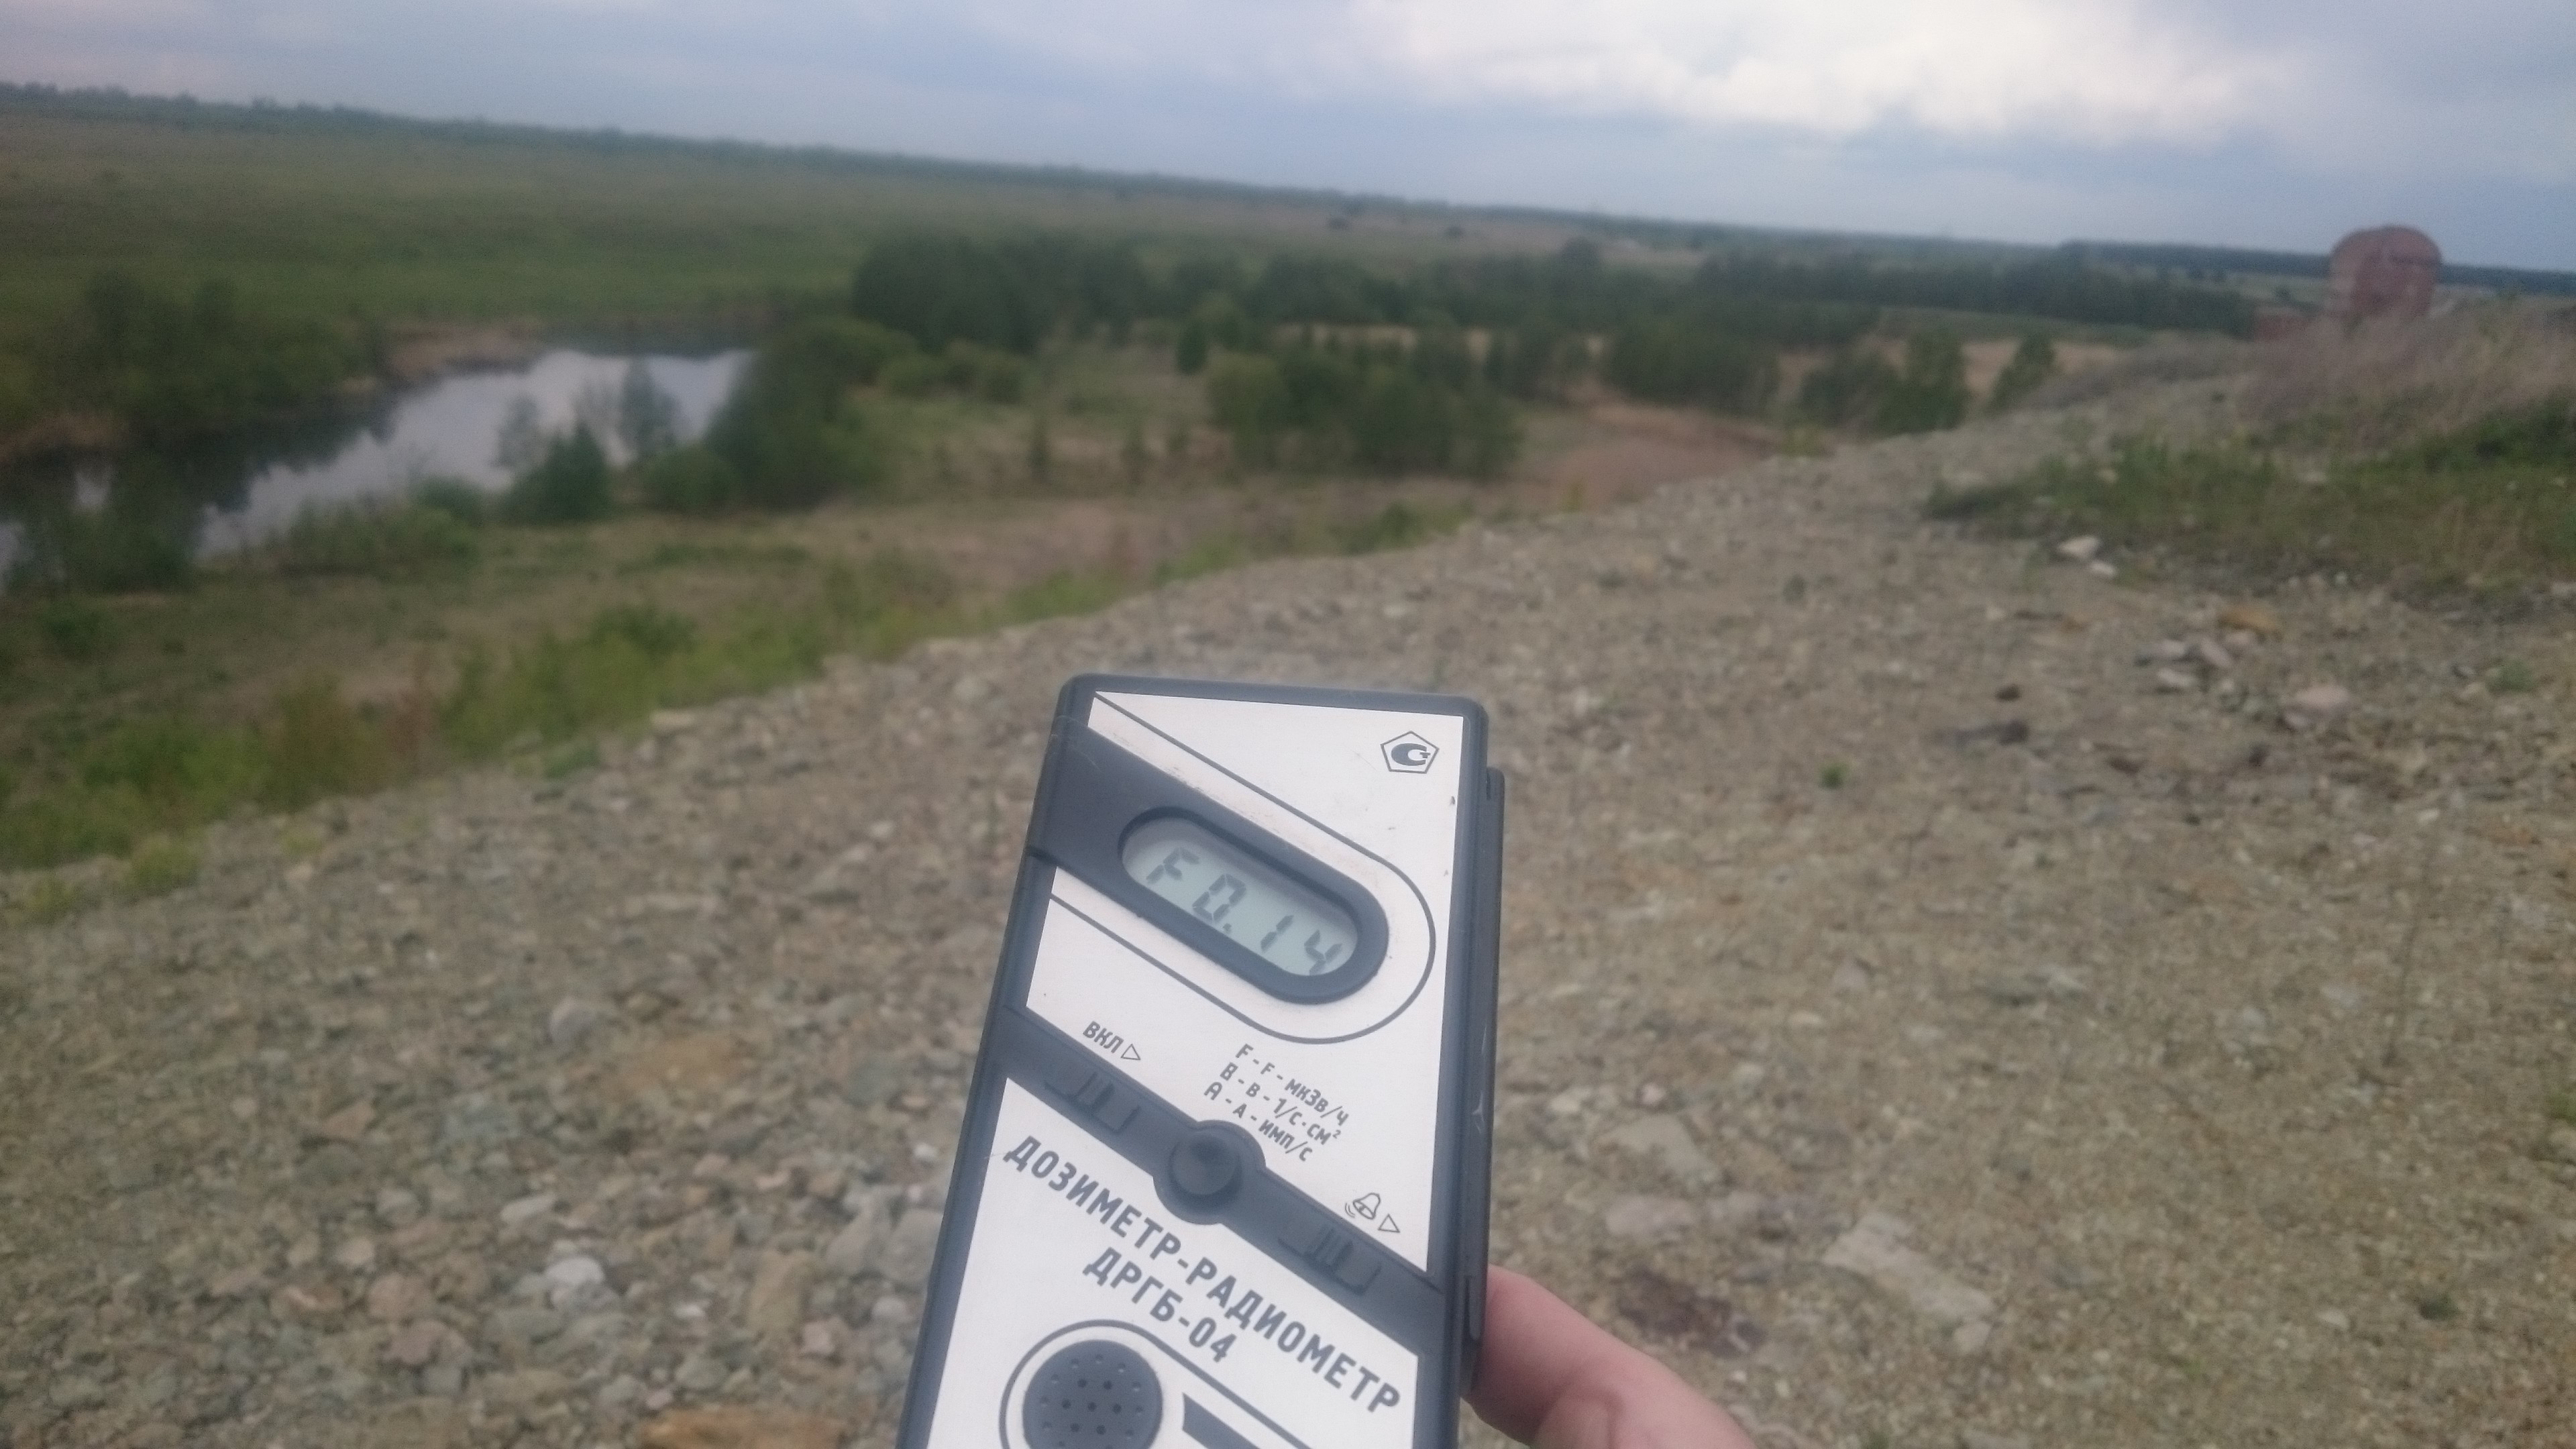 Точка измерения МЭД гамма-излучения в окрестностях реки Теча в поселке Муслюмово Кунашакского района Челябинской области